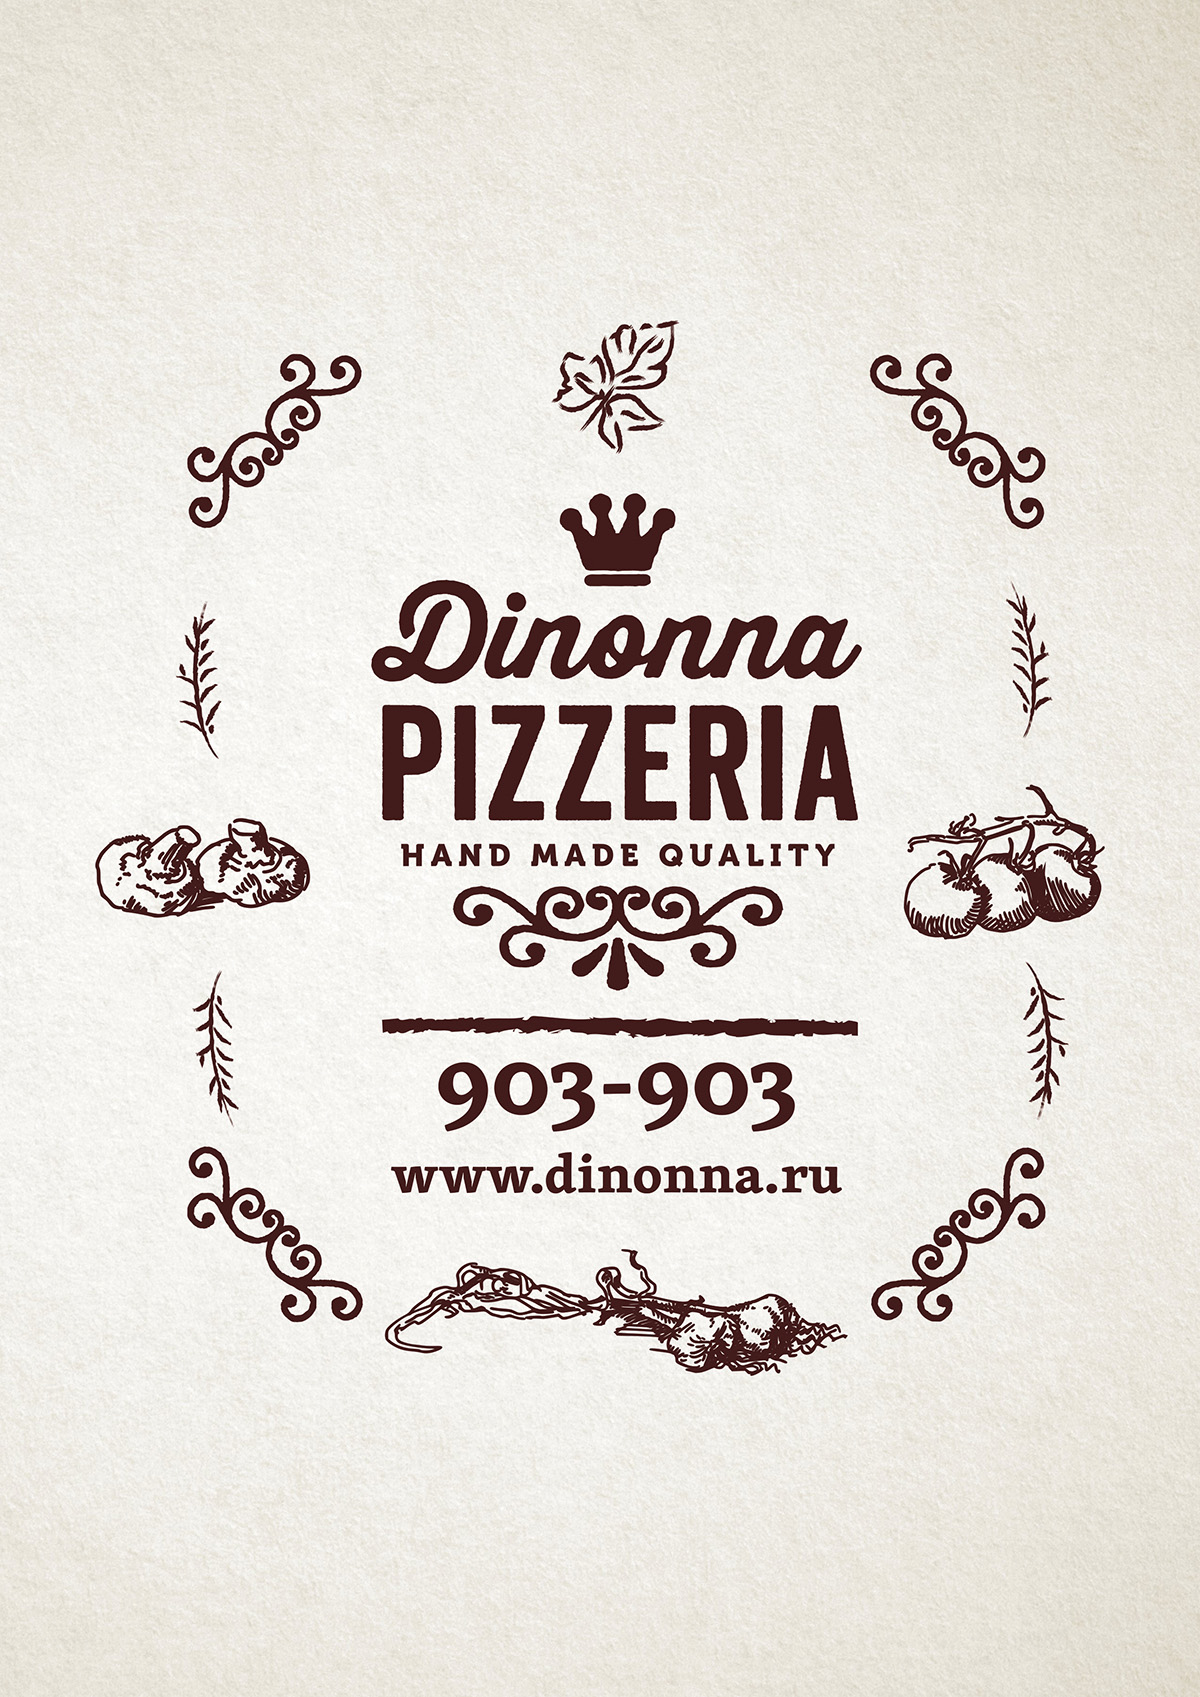 Логотип и фирменный стиль пиццерии Dinonna